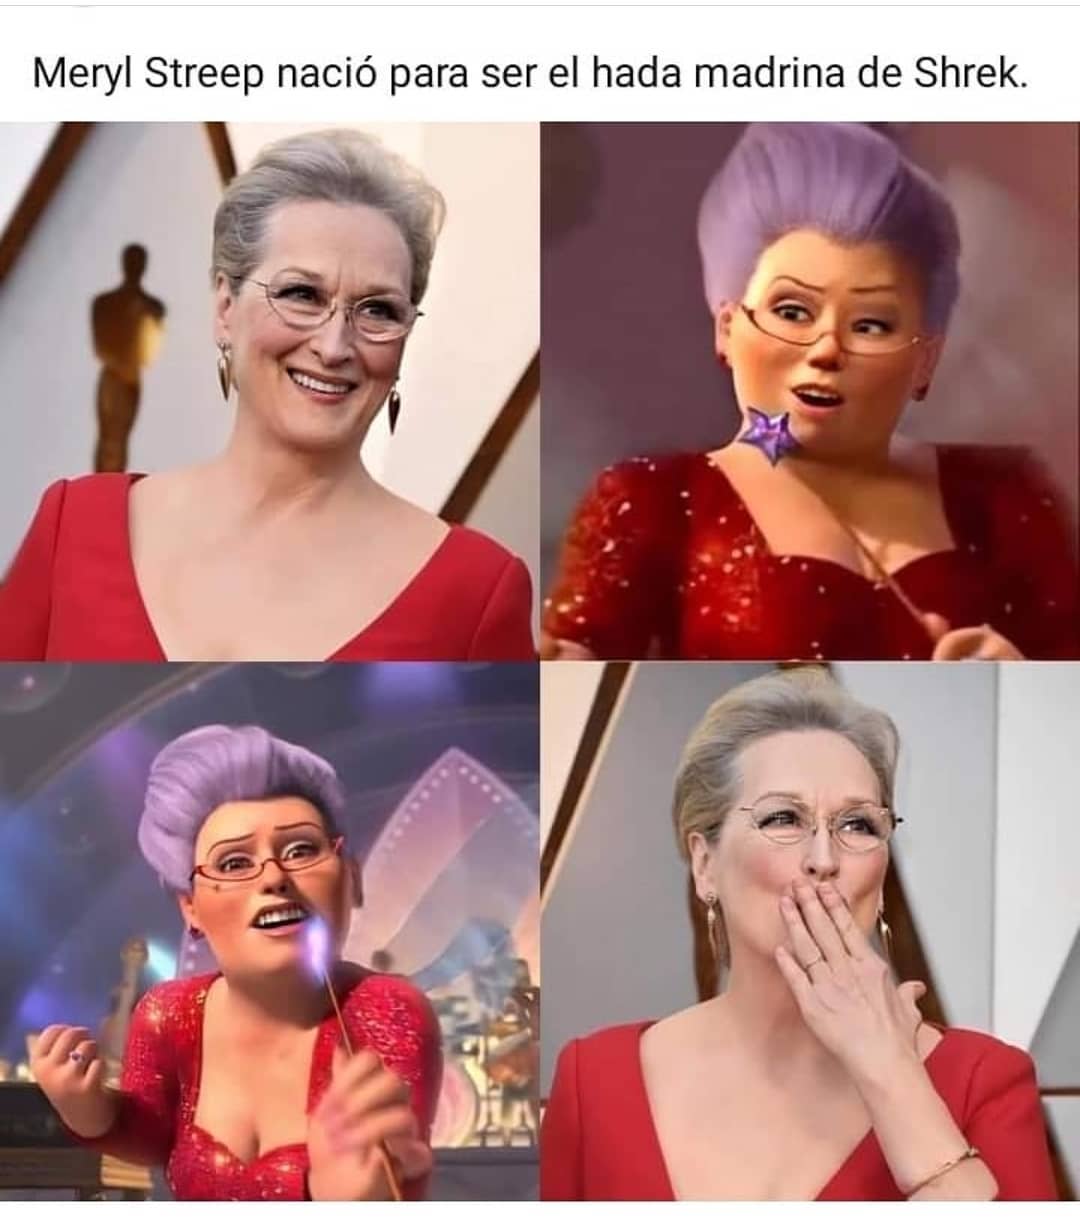 Meryl Streep nació para ser el hada madrina de Shrek.